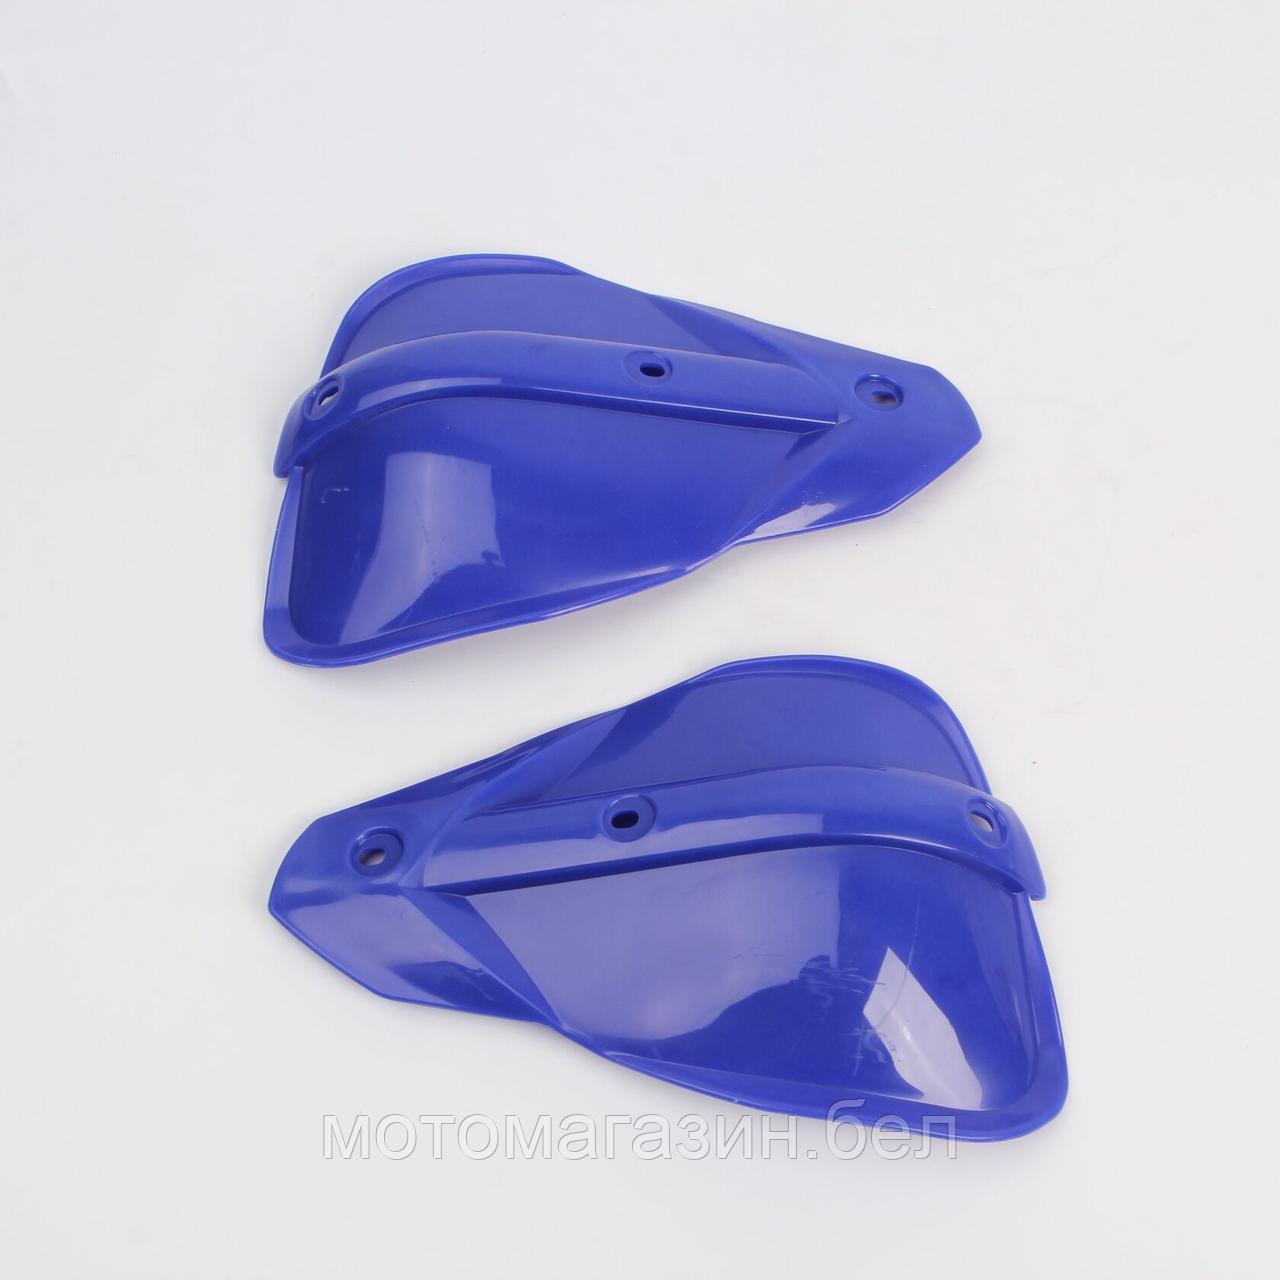 Пластик для защиты рук, реплика Cycra (Синий)